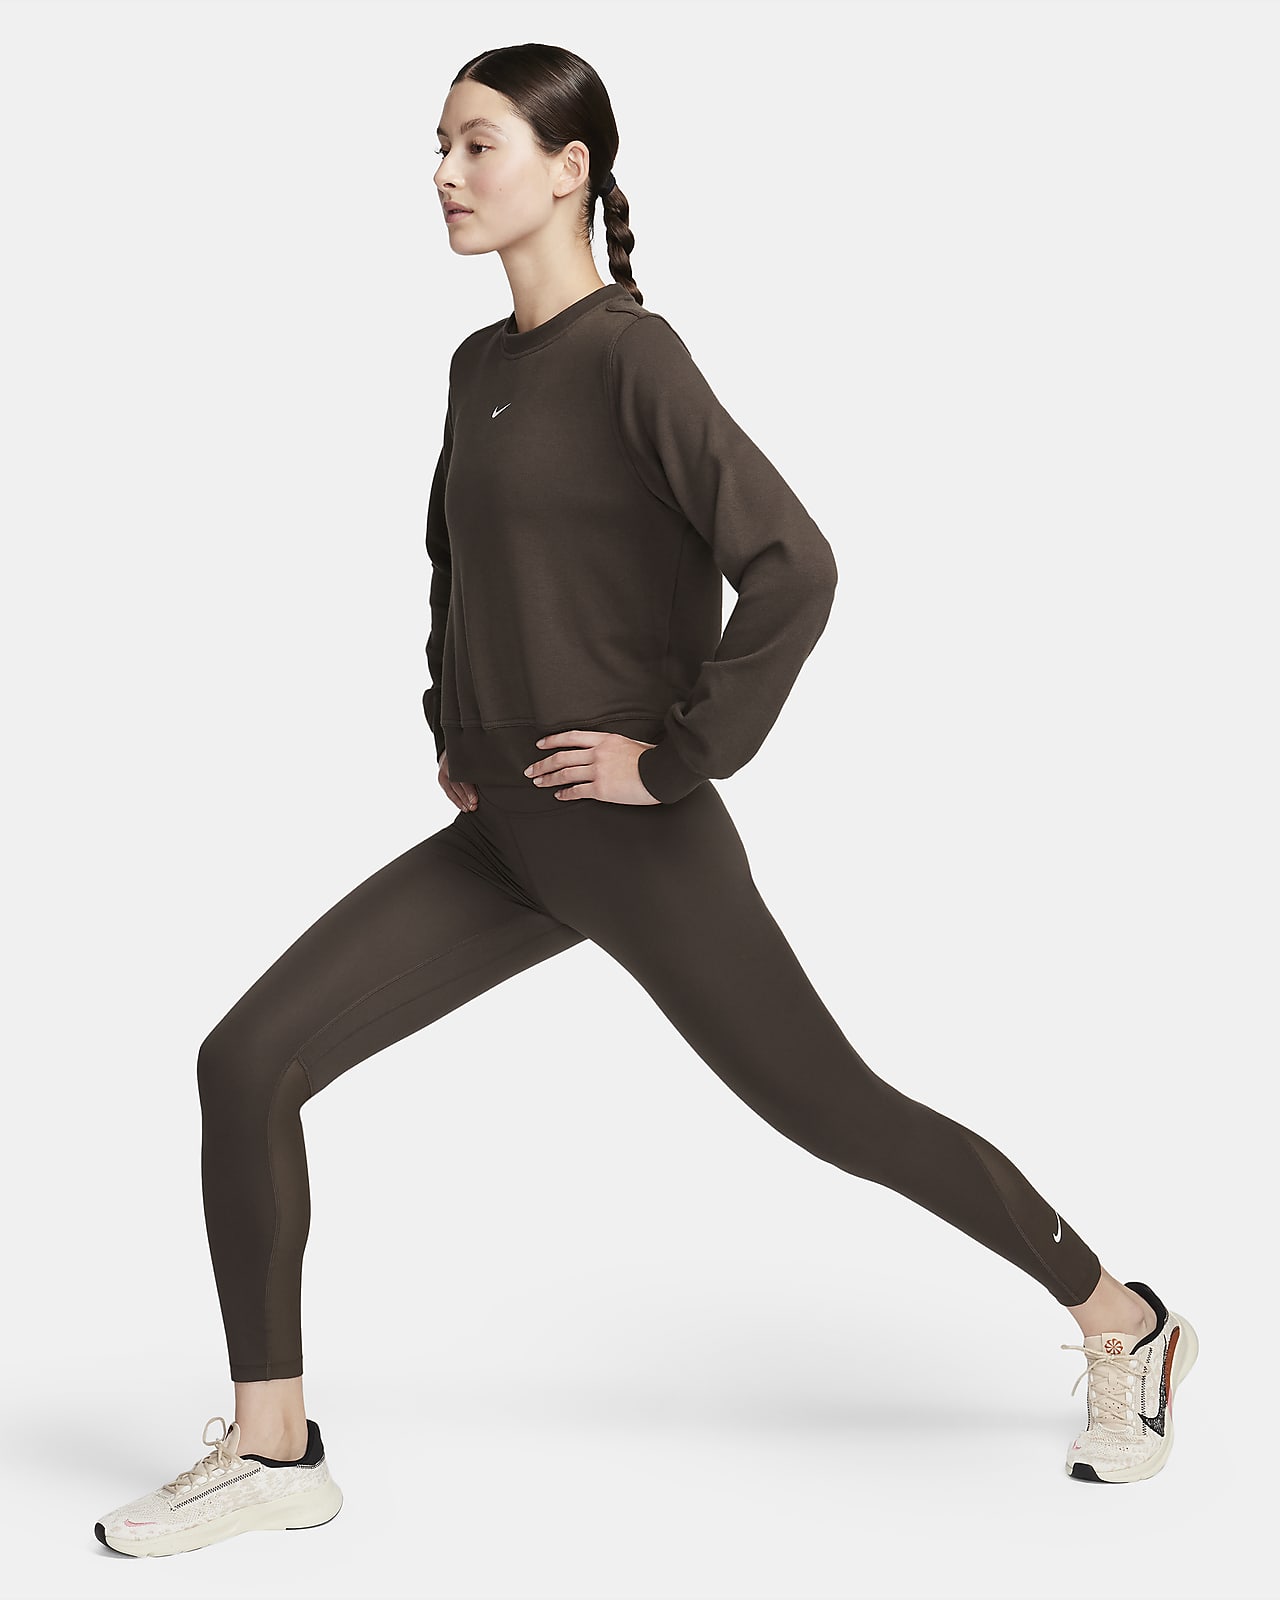 Leggings de cintura normal com painéis de malha Nike Pro para